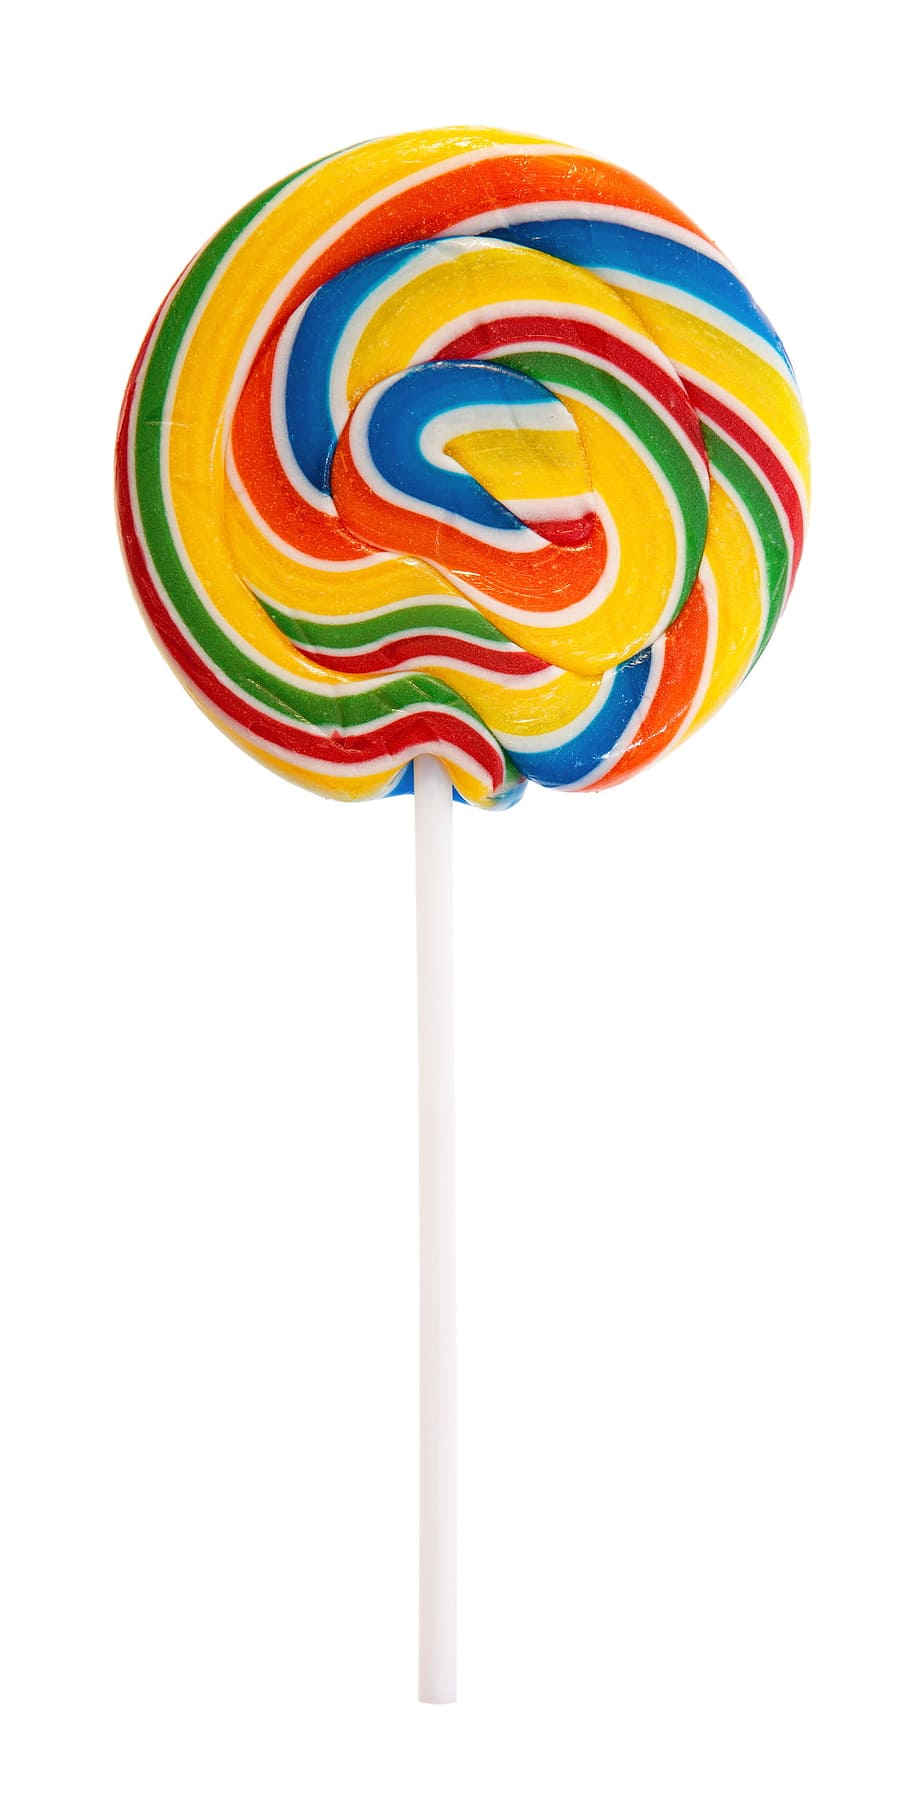 lollipop, brillante, candy, círculo, confección, confitería, postre, comida, diversión, aislado